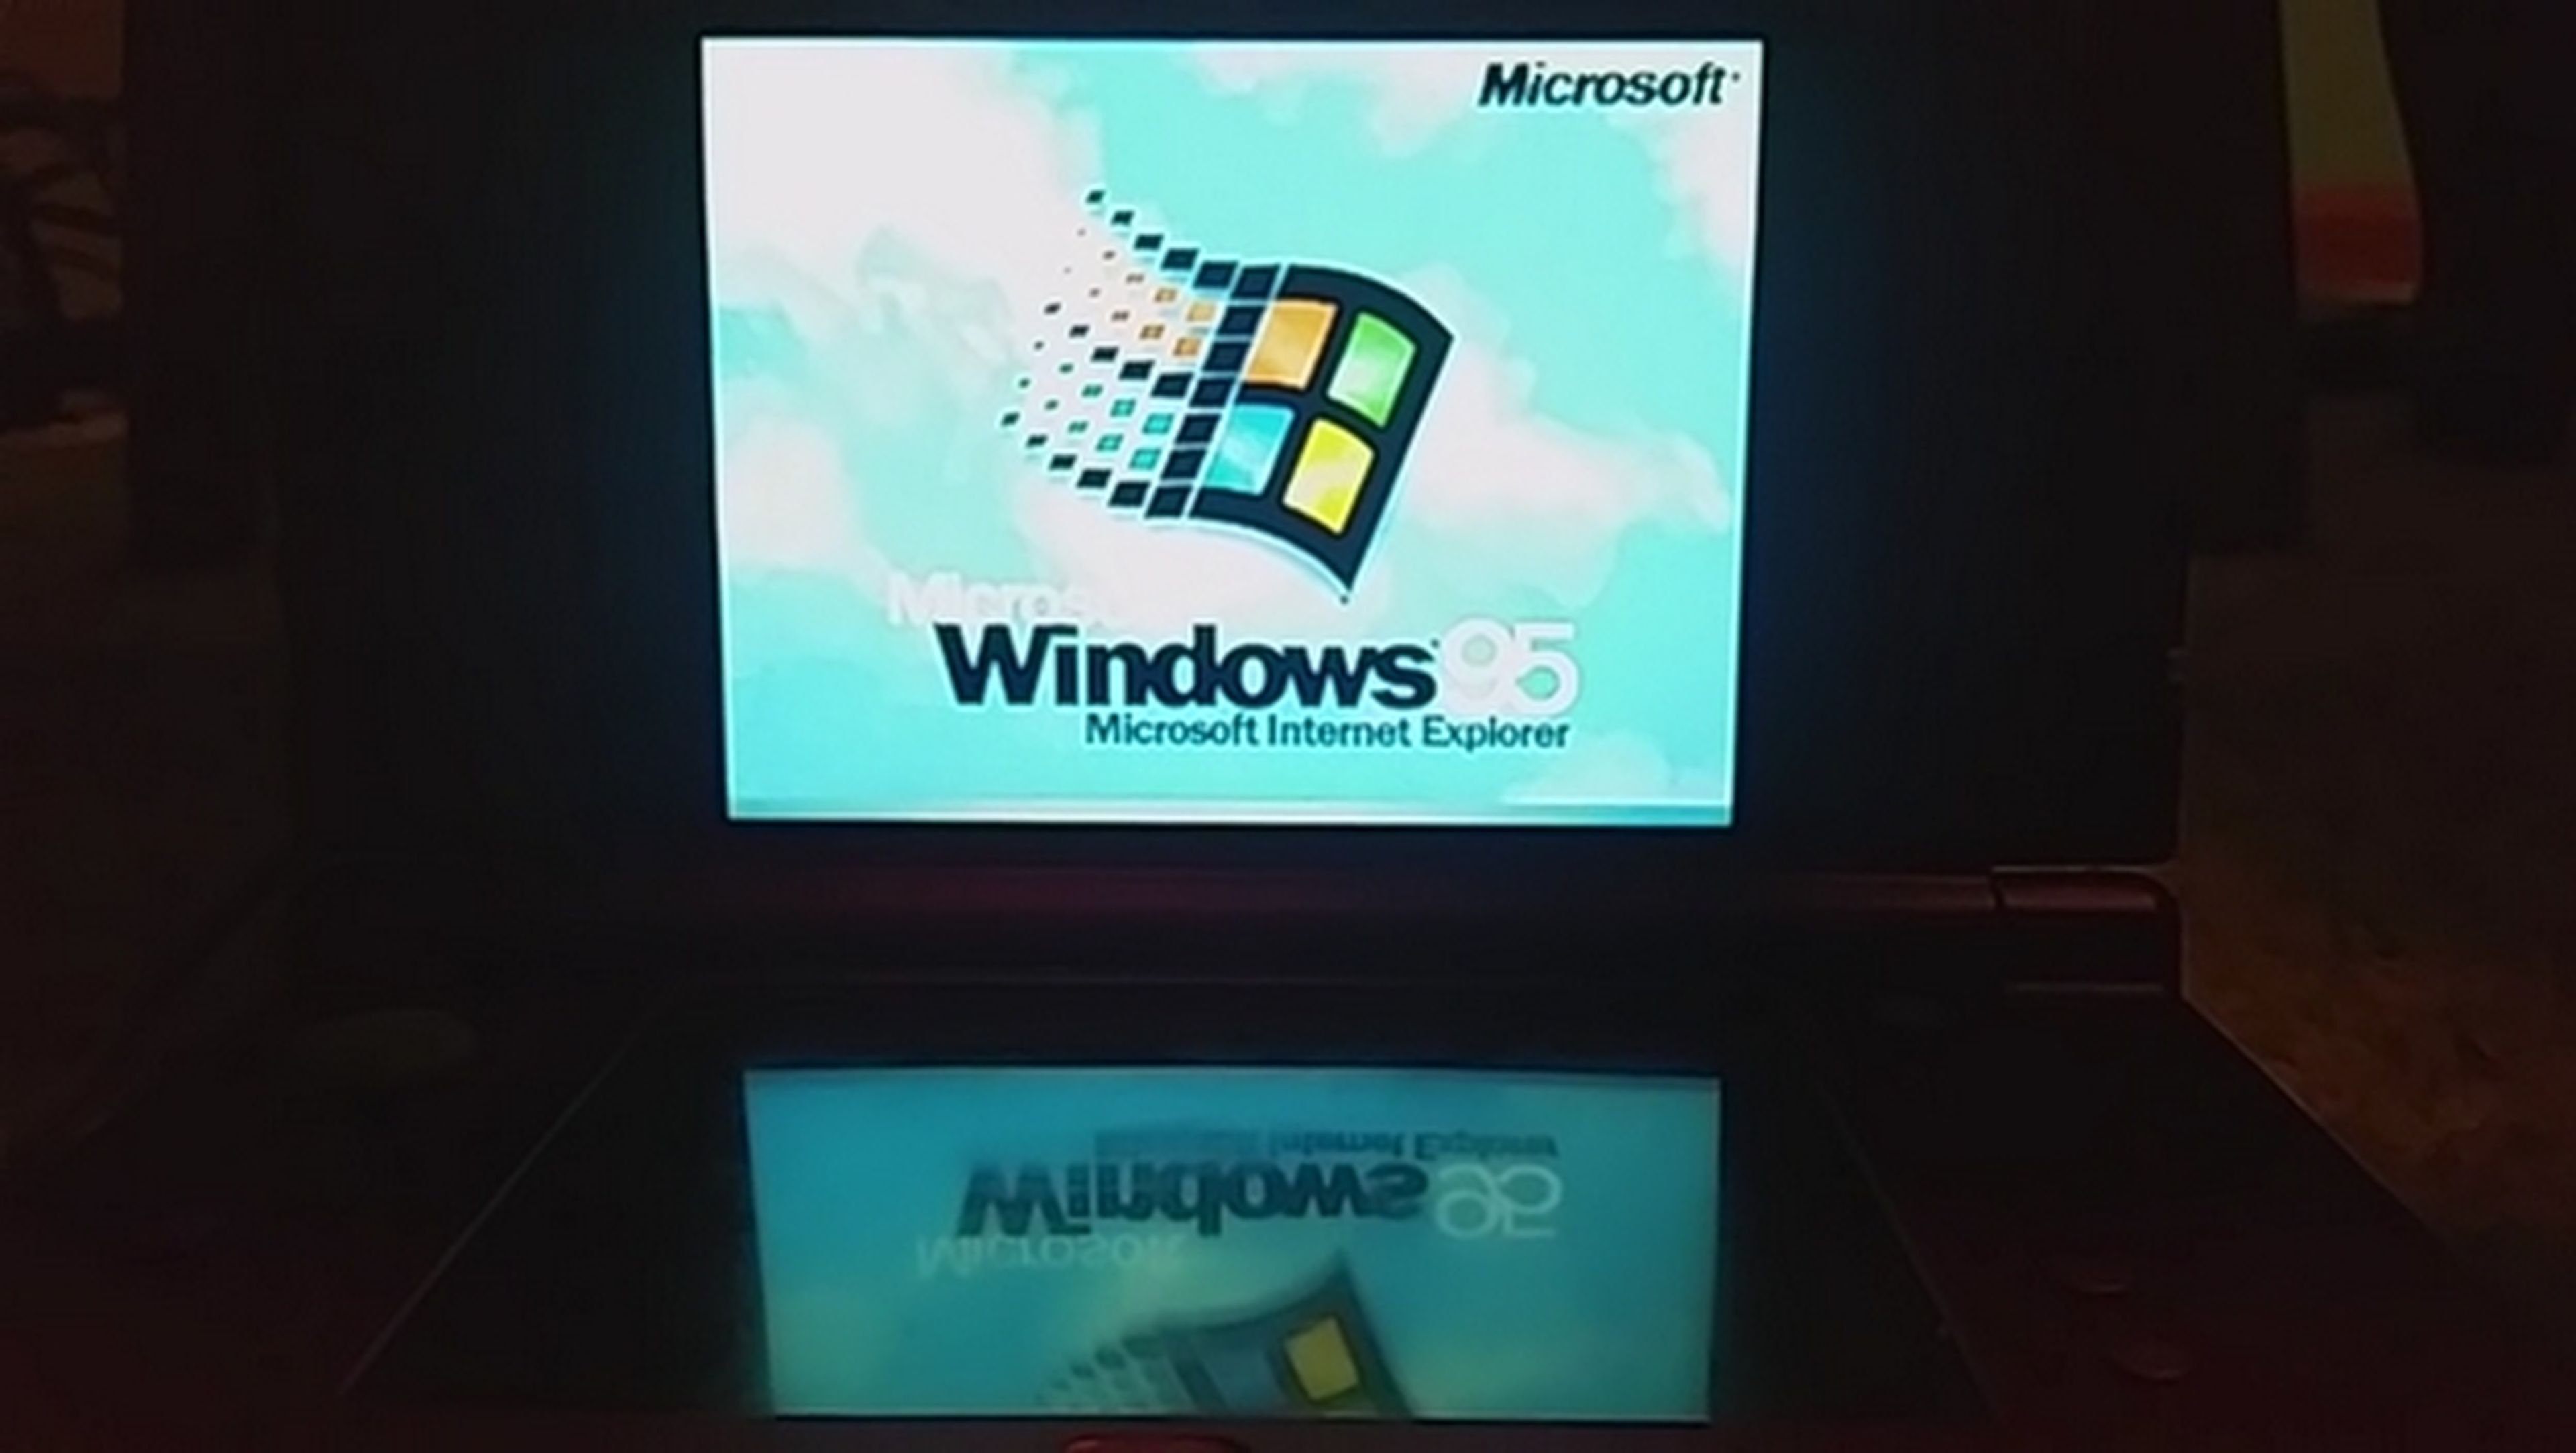 Consiguen instalar Windows 95 en una consola Nintendo 3DS XL